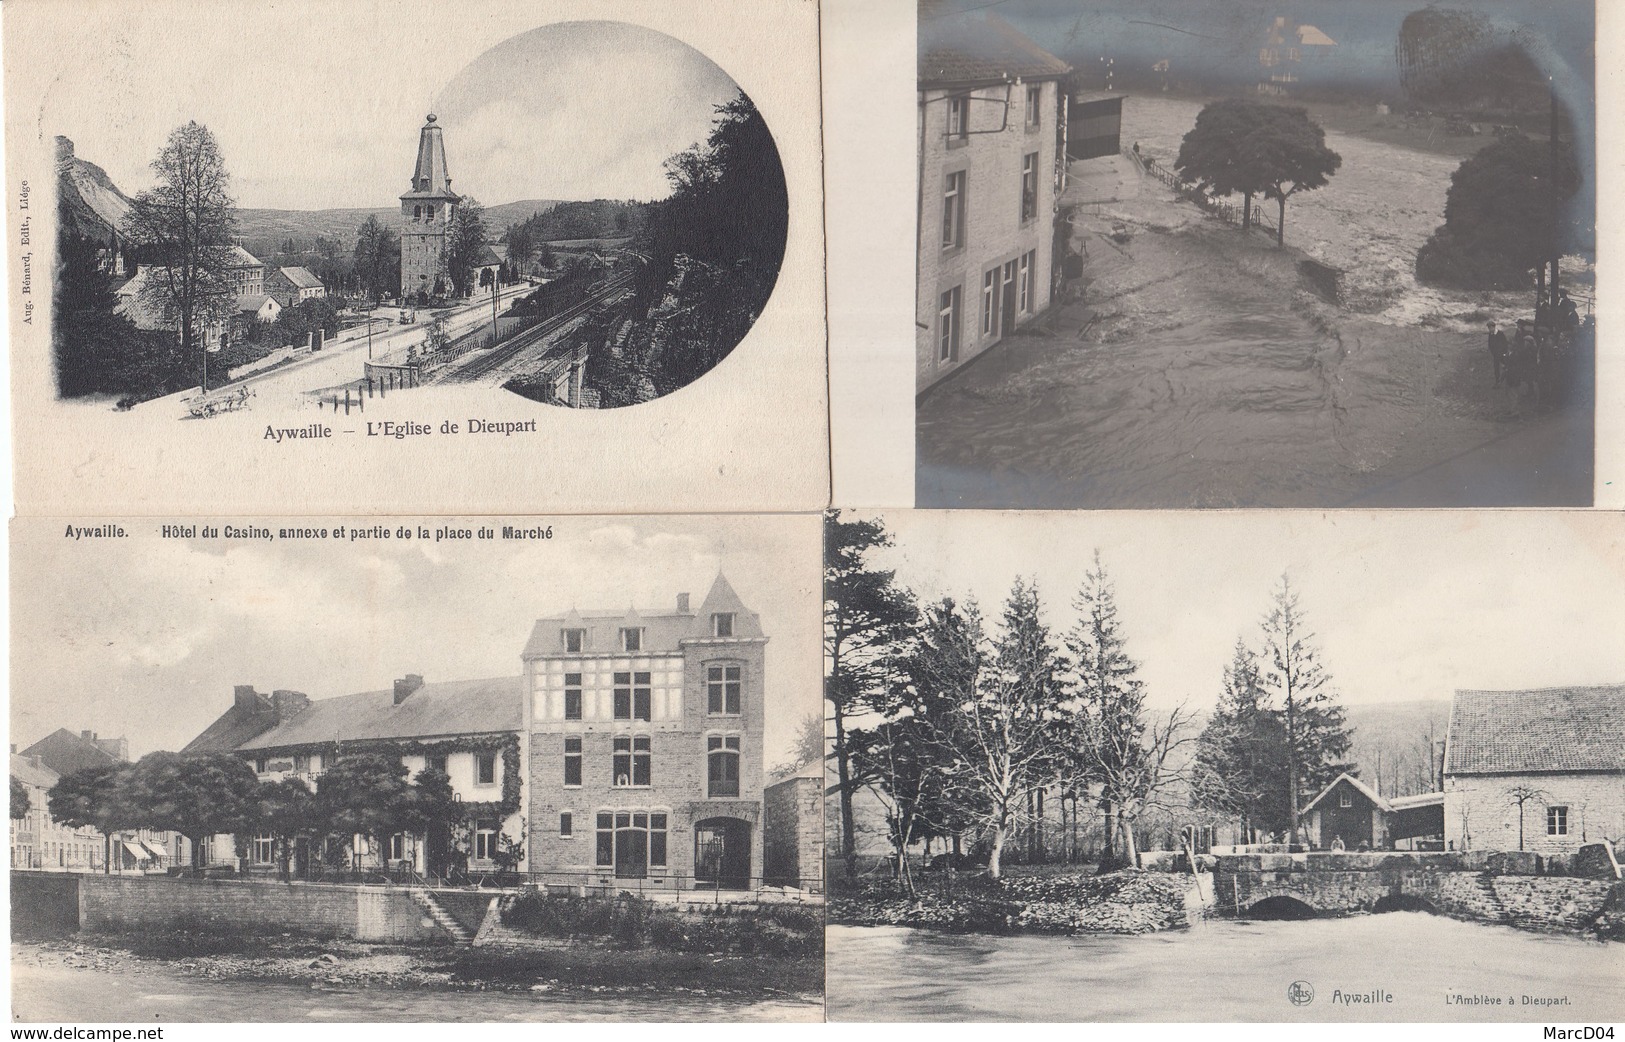 AYWAILLE: Très beau lot de 48 cartes postales anciennes